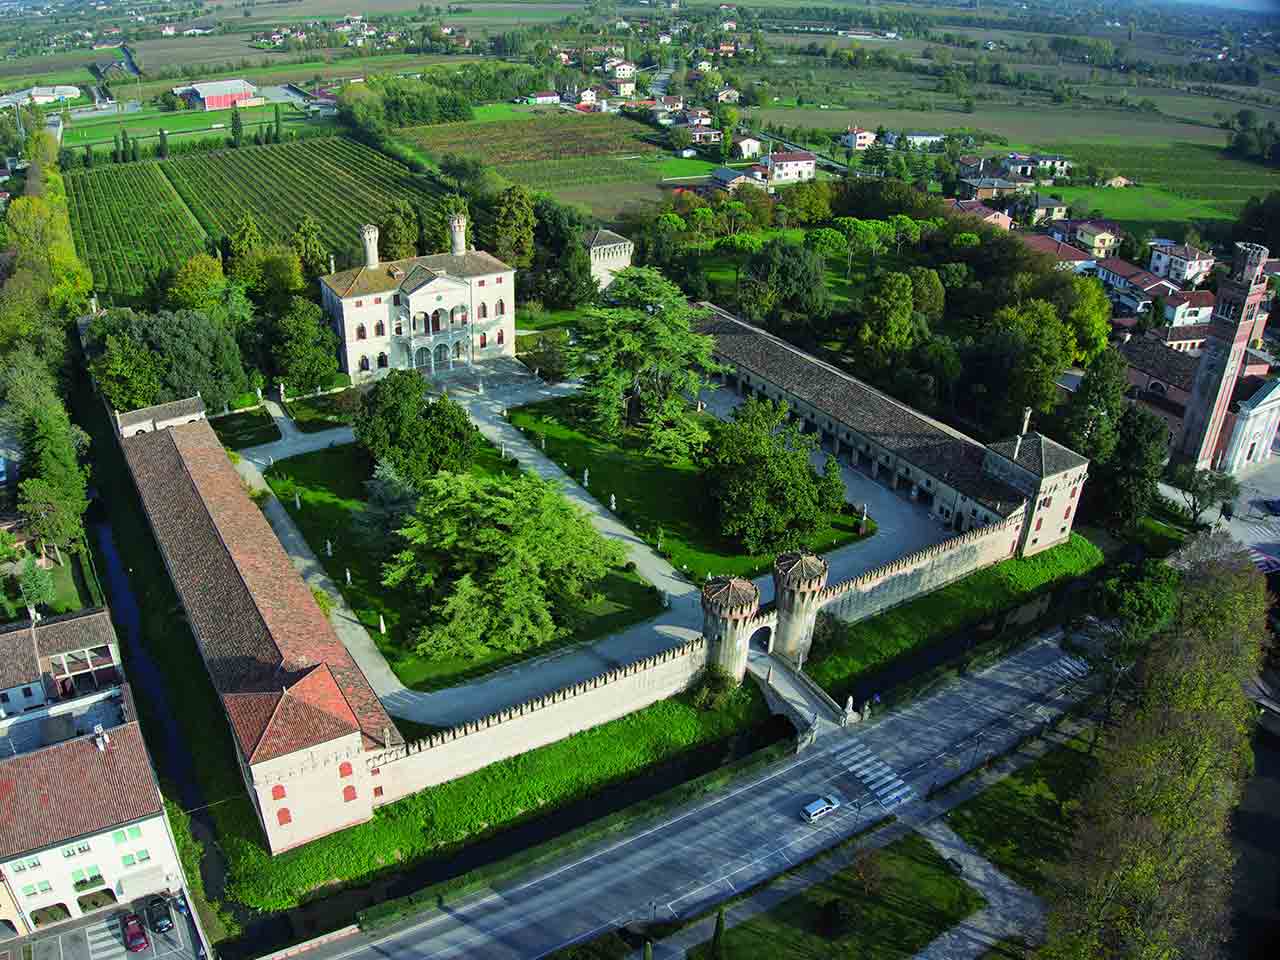 Villa Giustinian, Ciani Bassetti, conosciuta come il Castello di Roncade - Un weekend in camper a Treviso e dintorni.